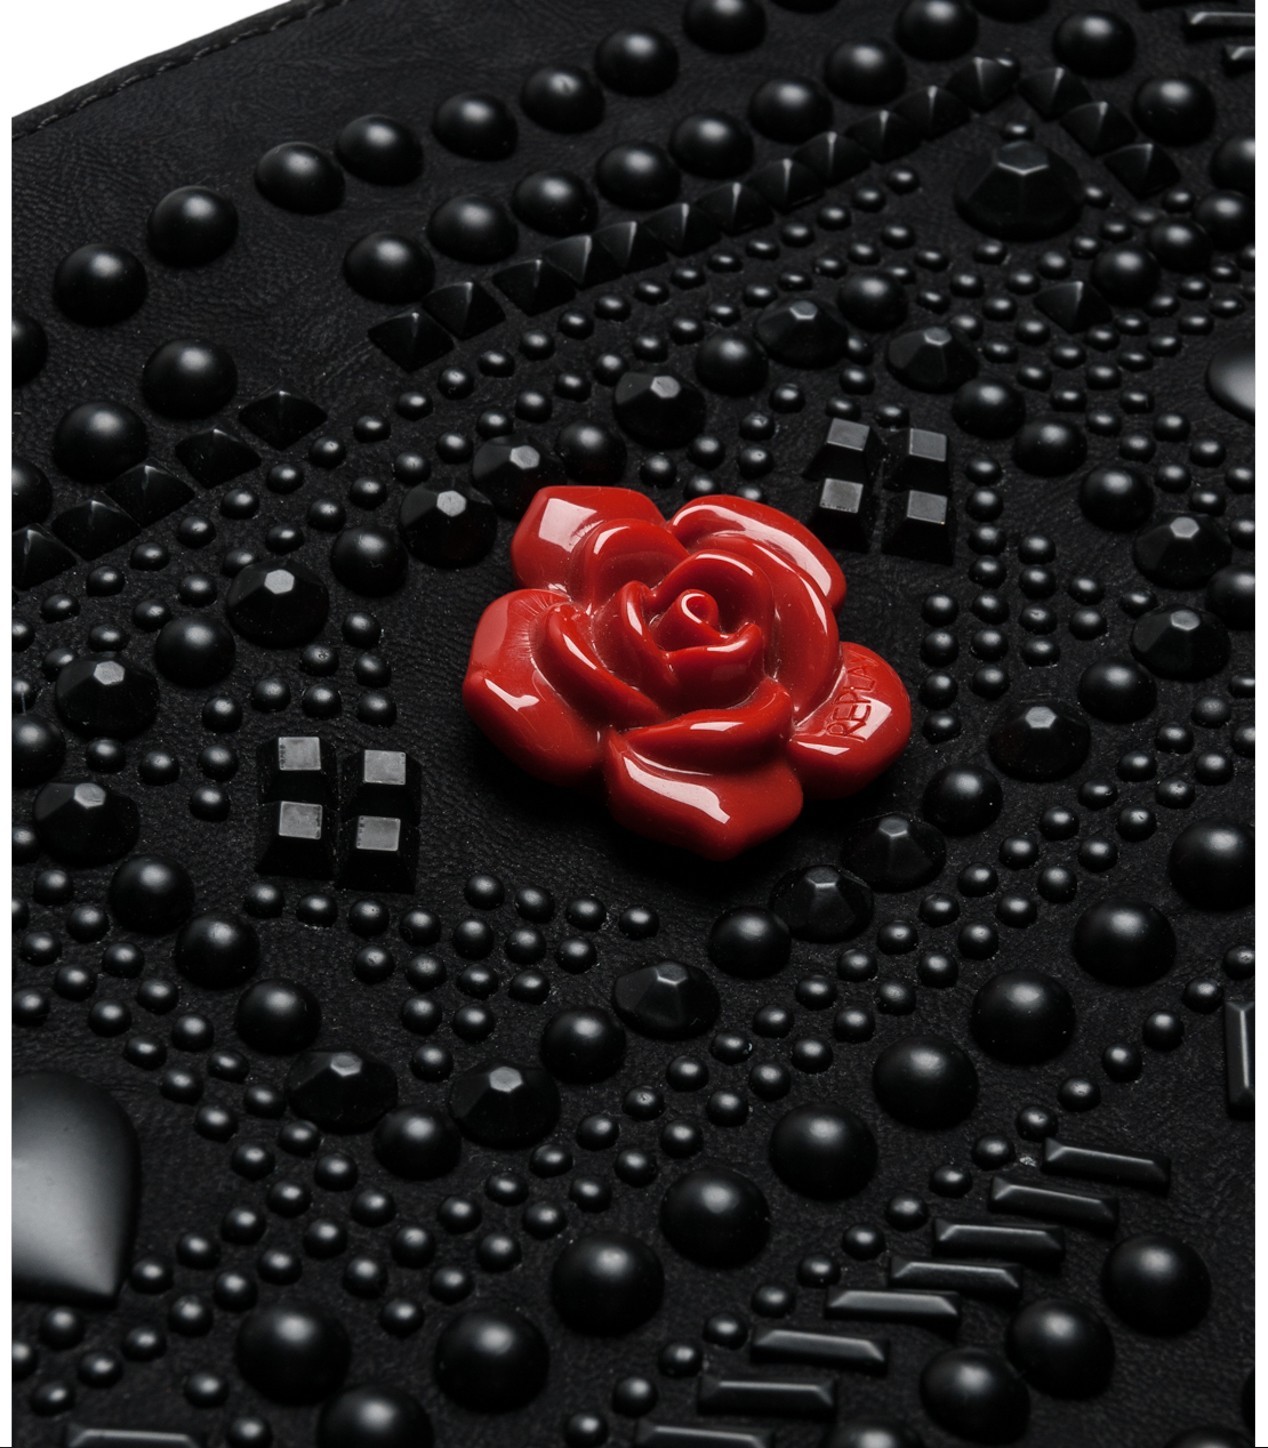 Replay női műbőr táska vörös rózsa díszítéssel fotója